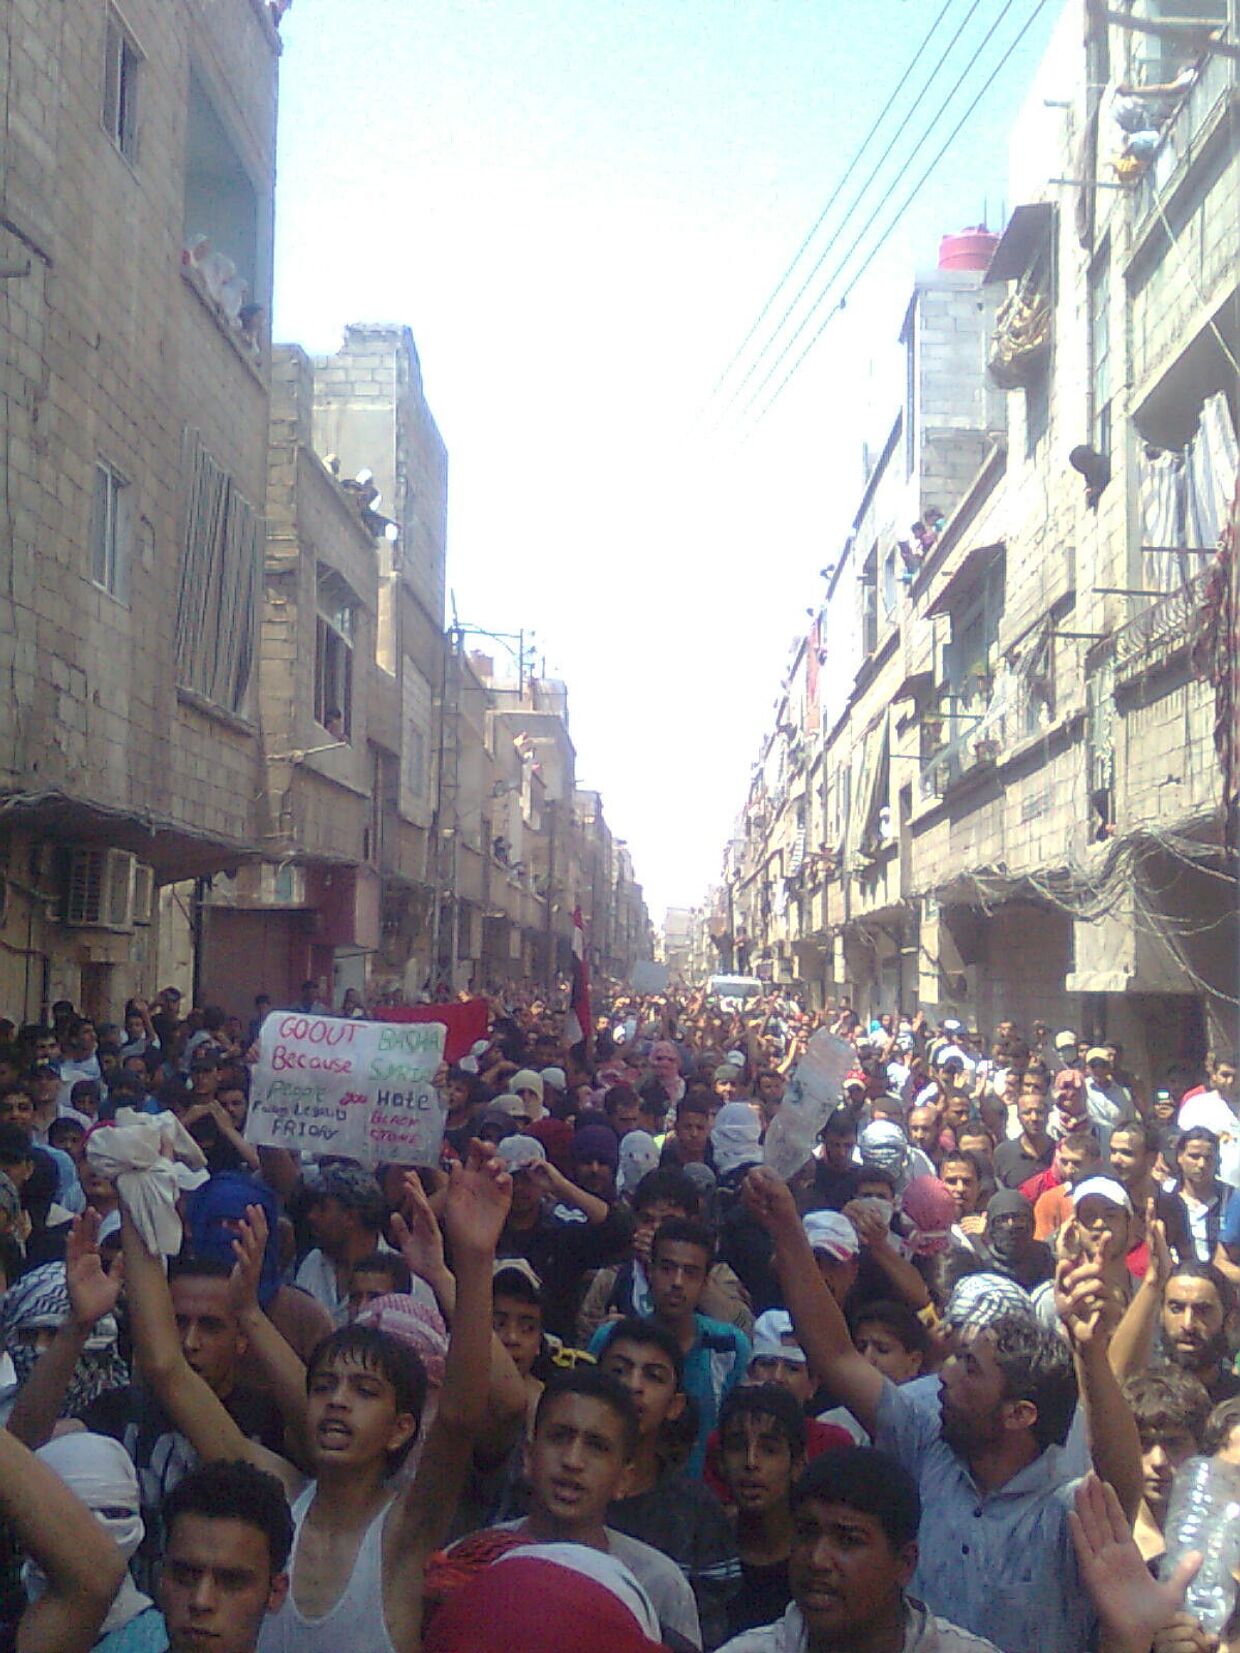 Протесты в Сирии